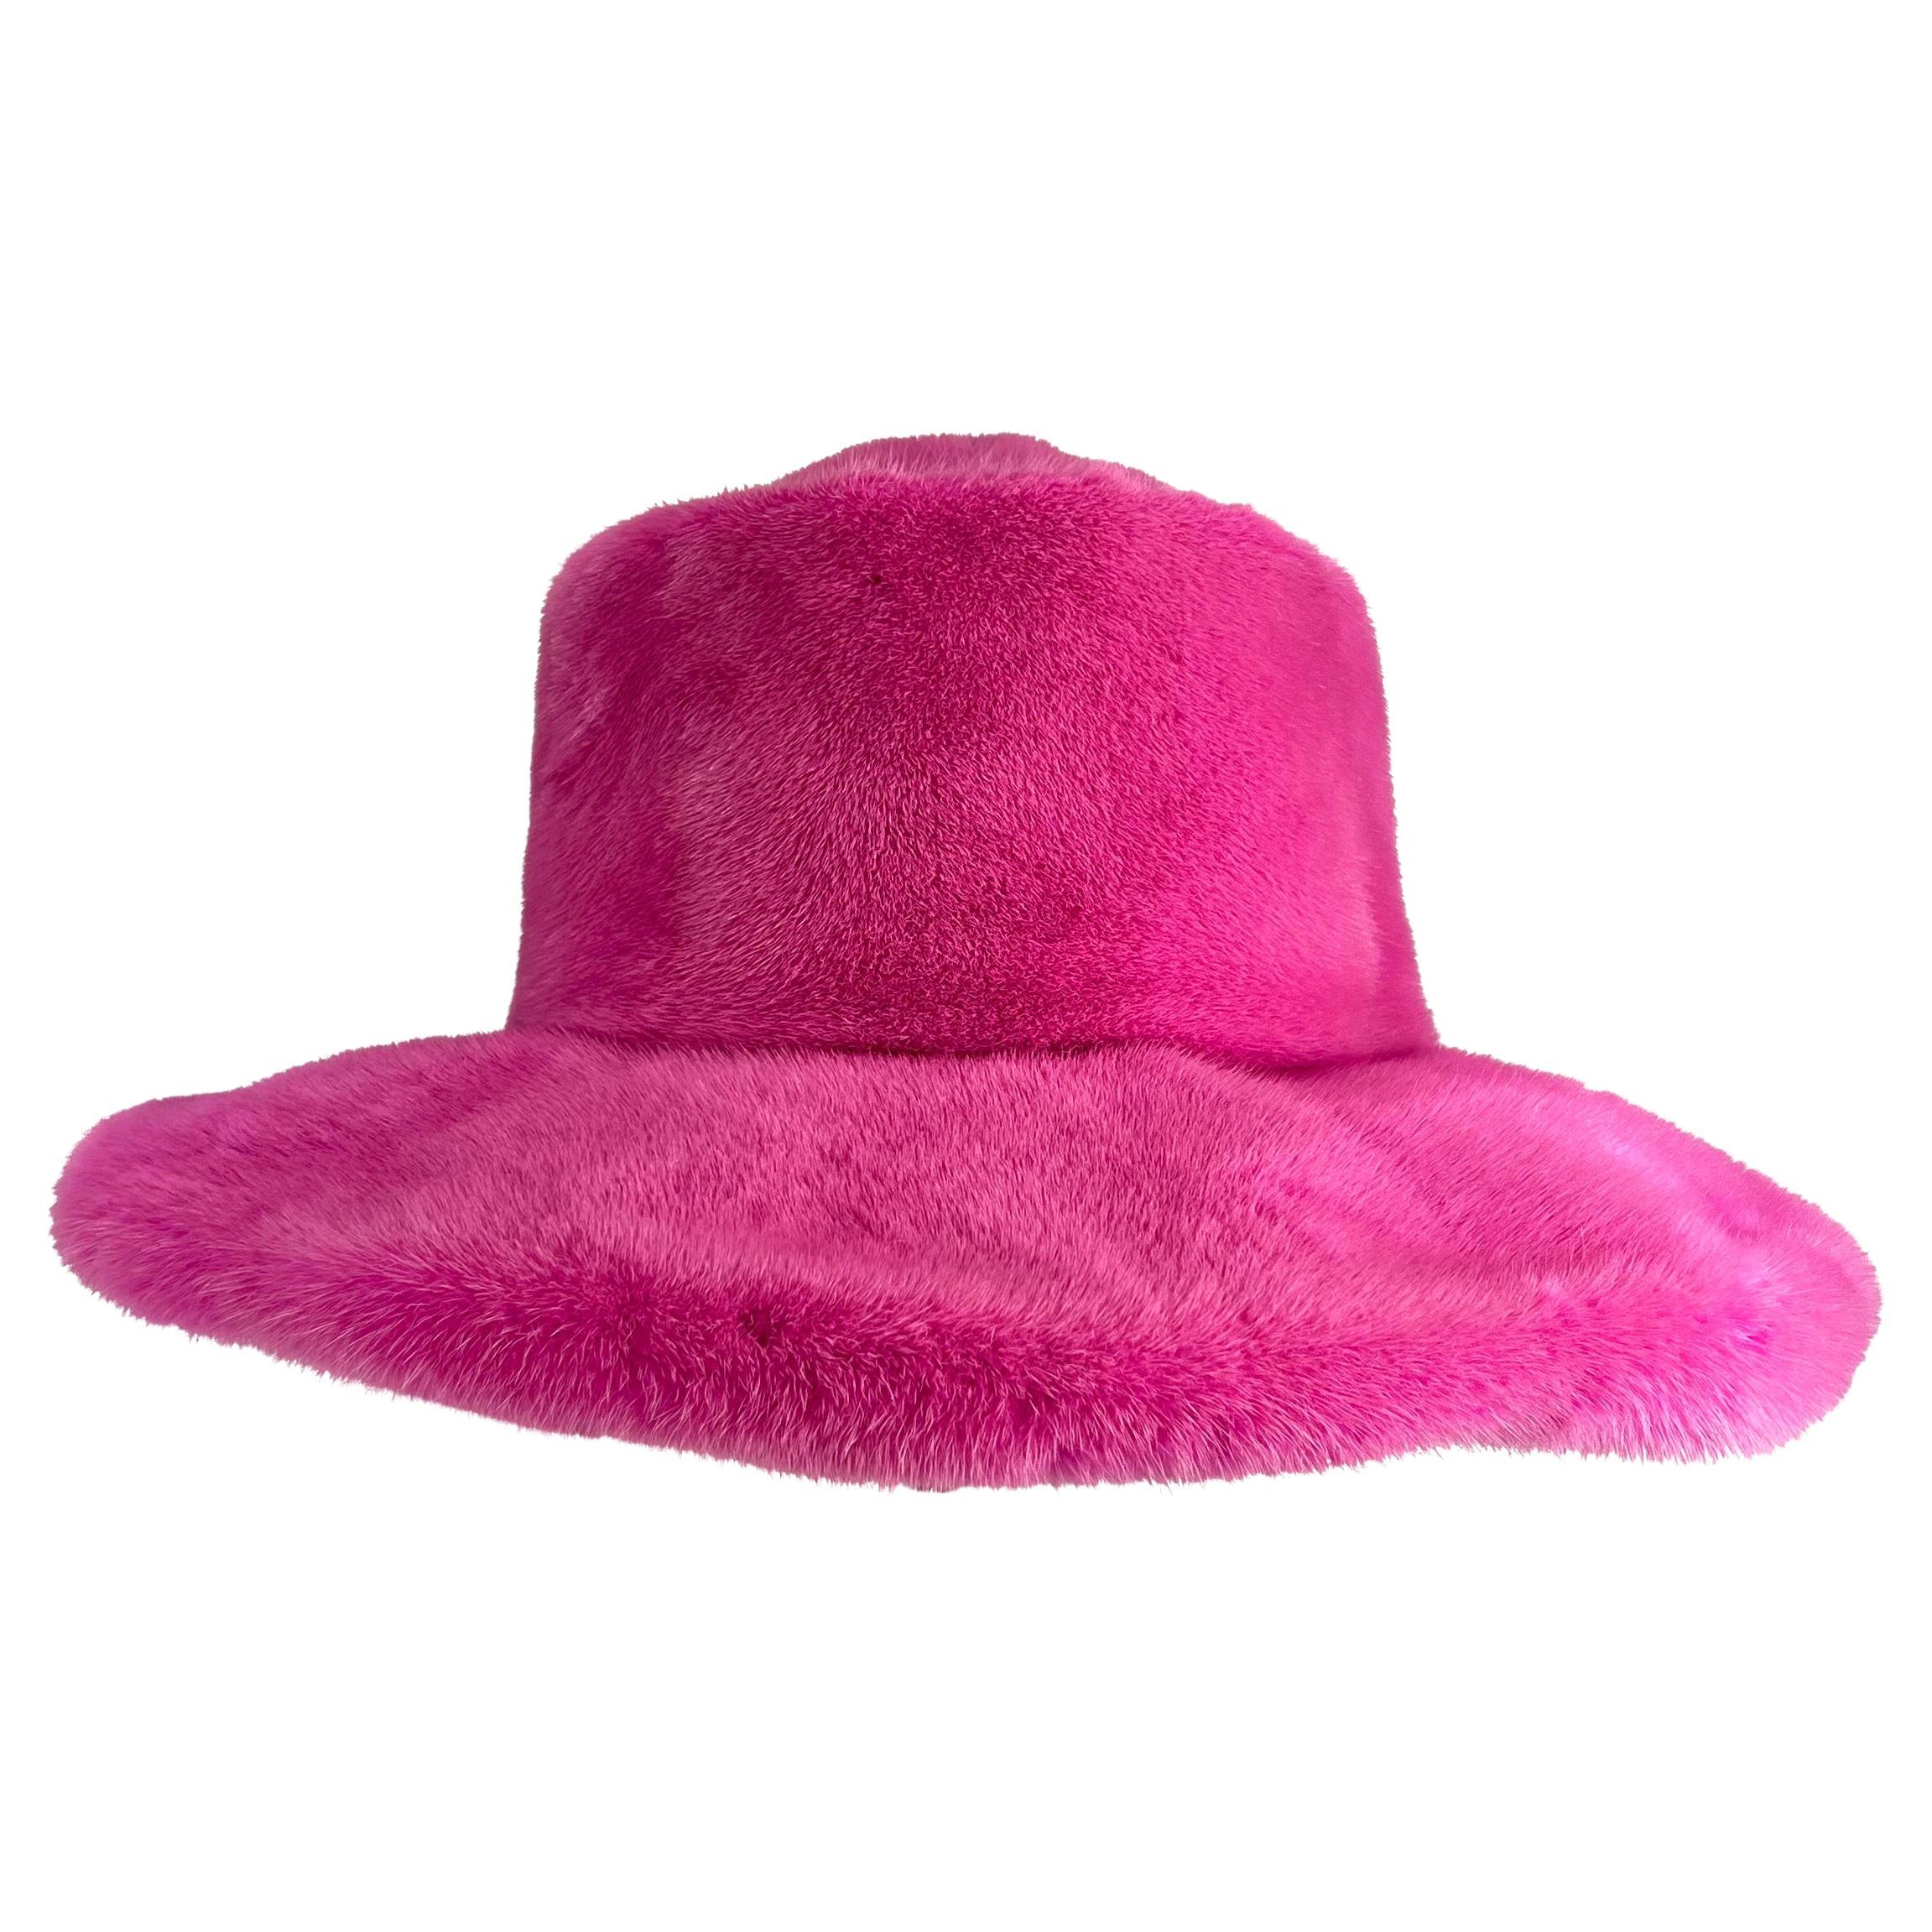 Suzanne Couture Millinery - Chapeau surdimensionné bordé de fourrure de vison rose vif 